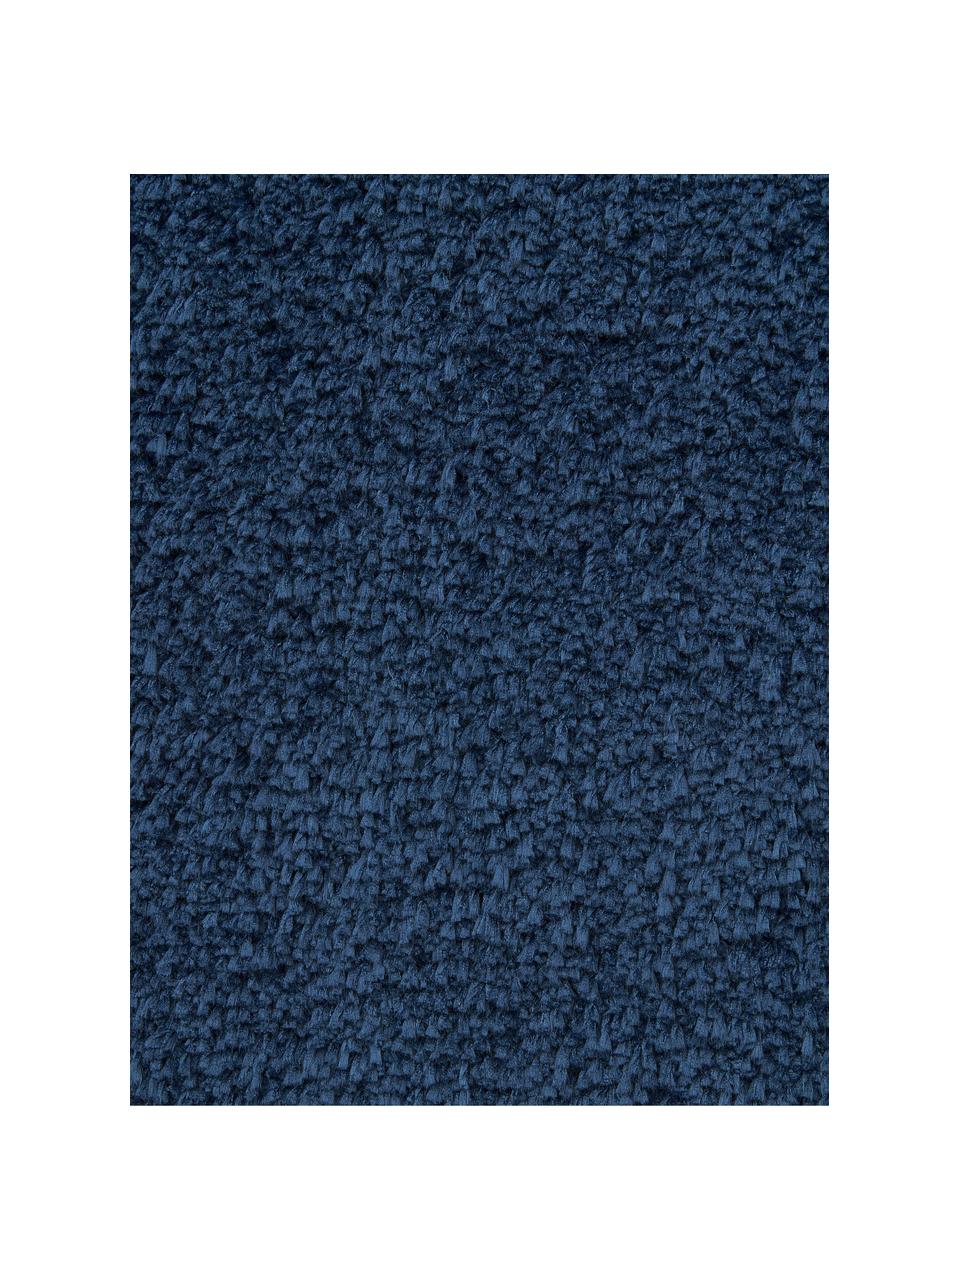 Puszysty dywan z długim włosiem Leighton, Ciemny niebieski, S 120 x D 180 cm (Rozmiar S)